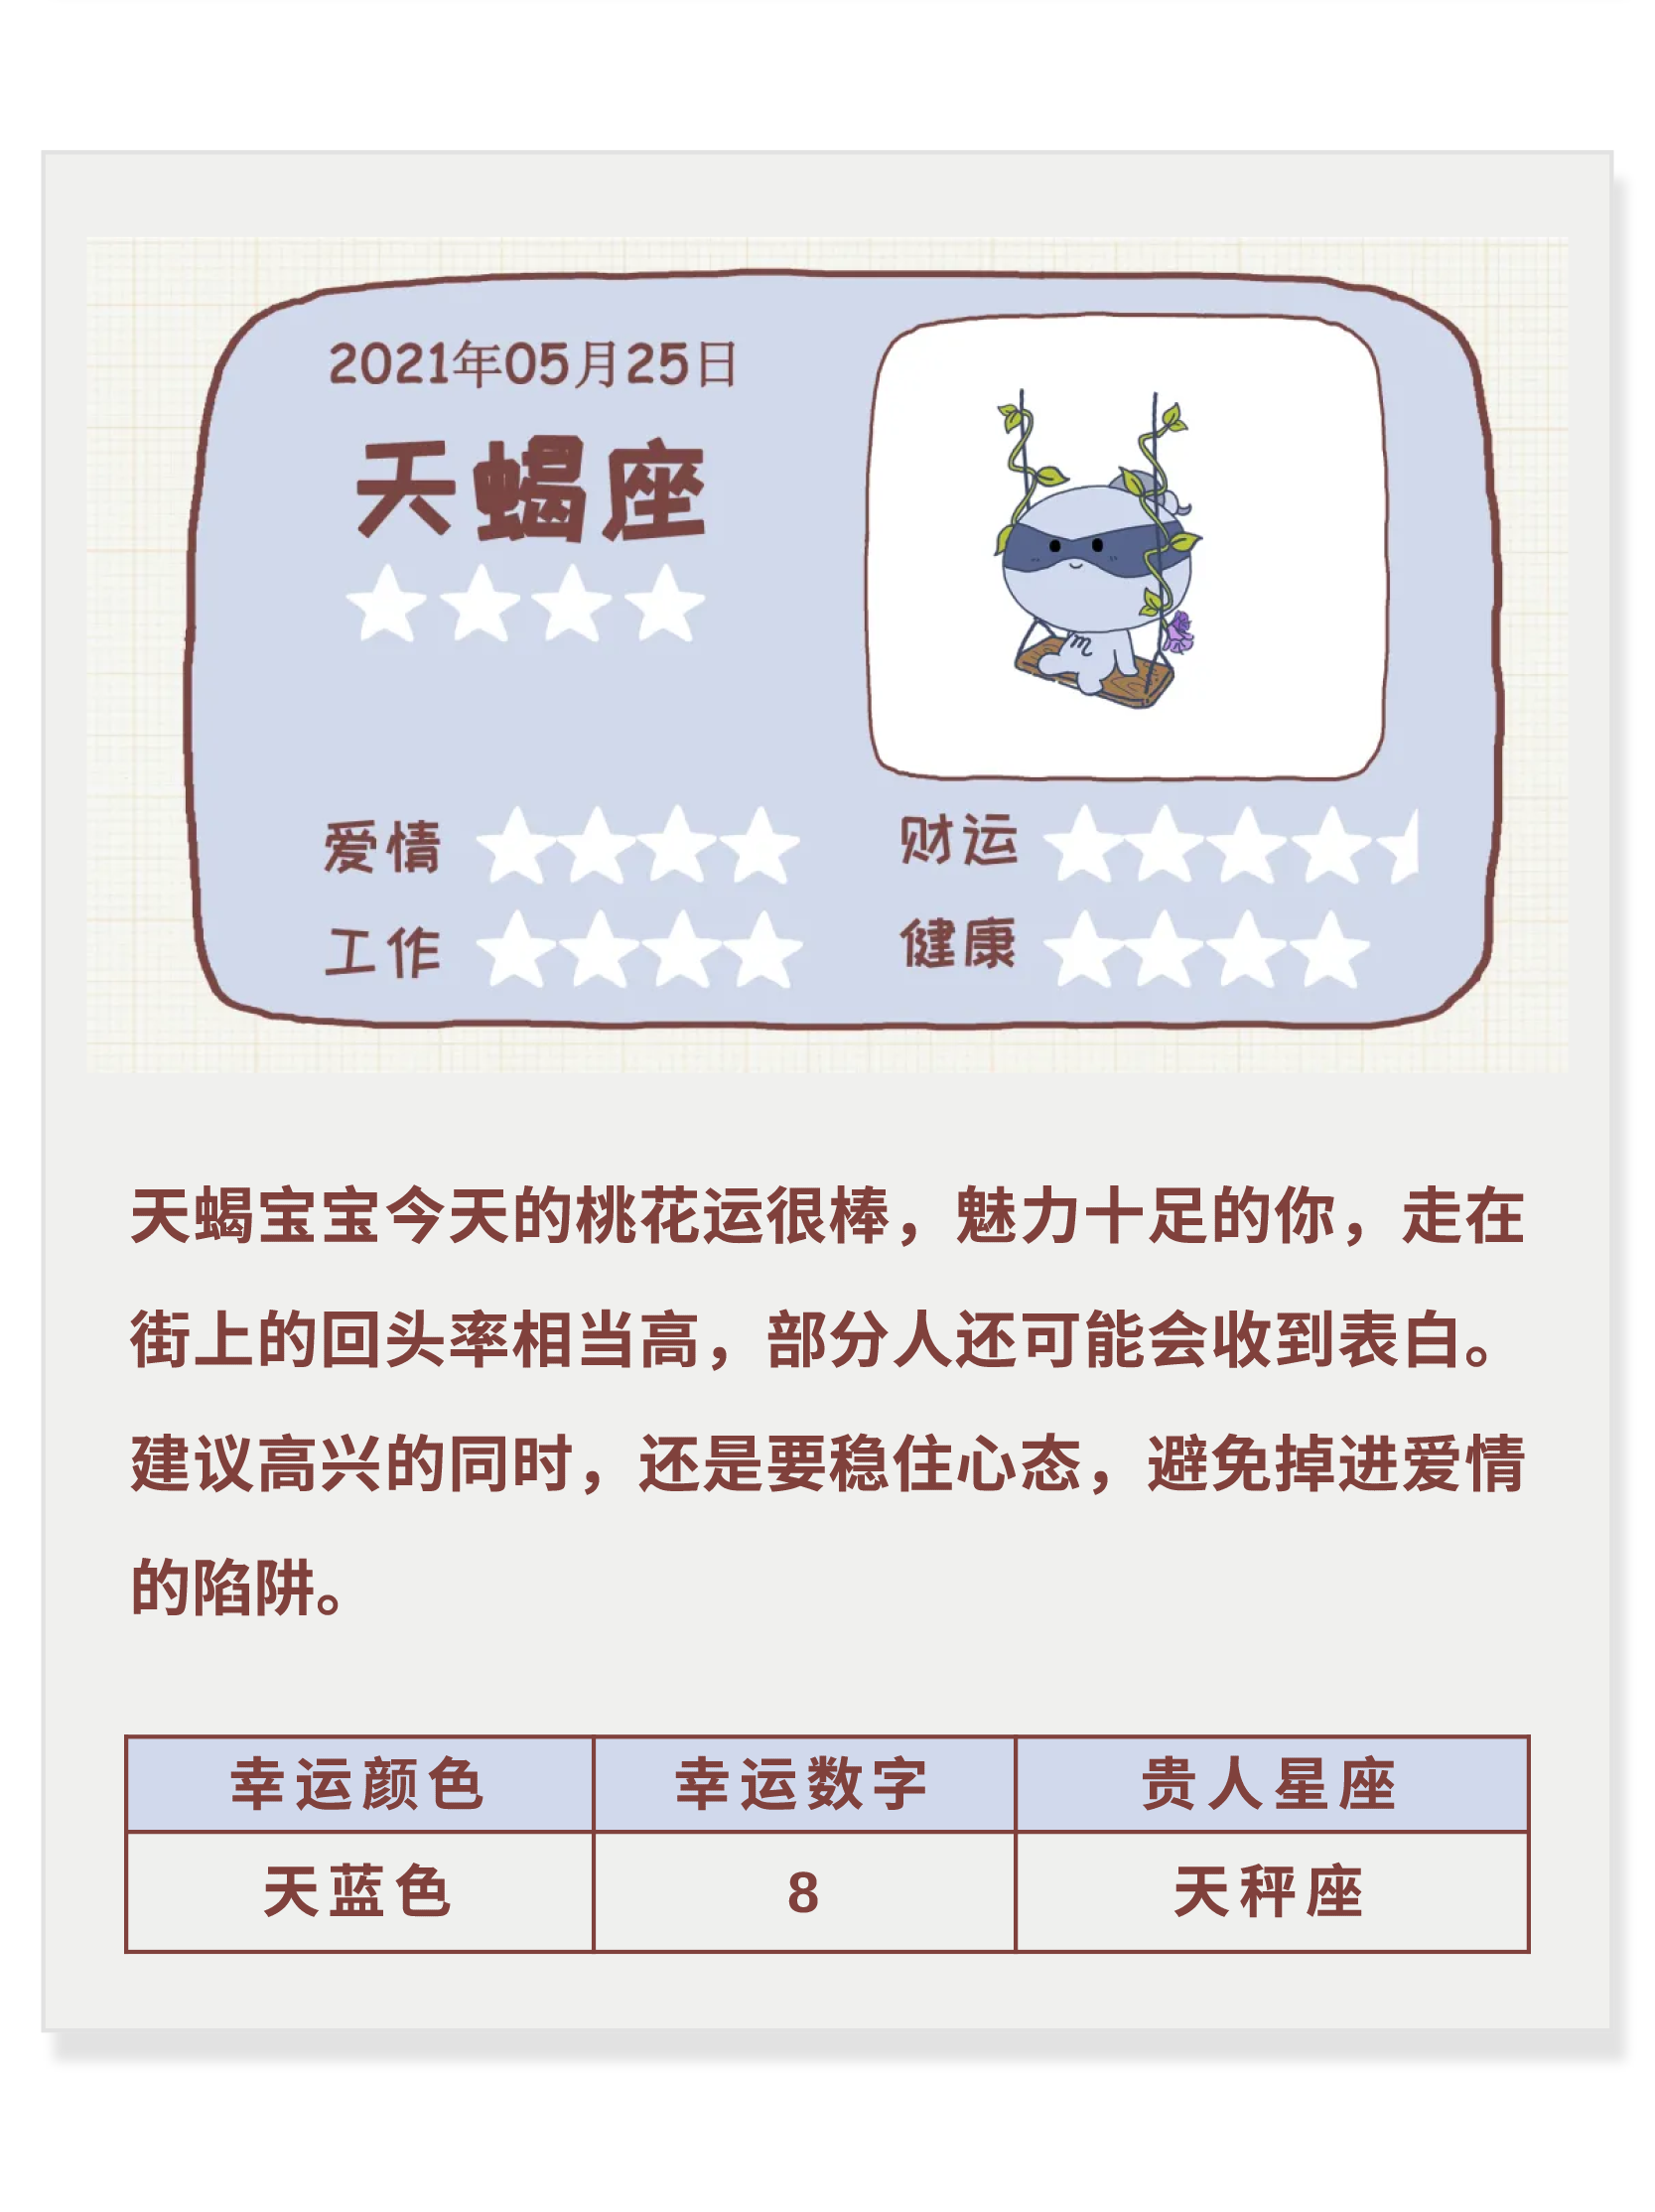 每日星座运势_星座每日运势查询运势_sitexingzuo360.cn 腾讯星座运势每日运势